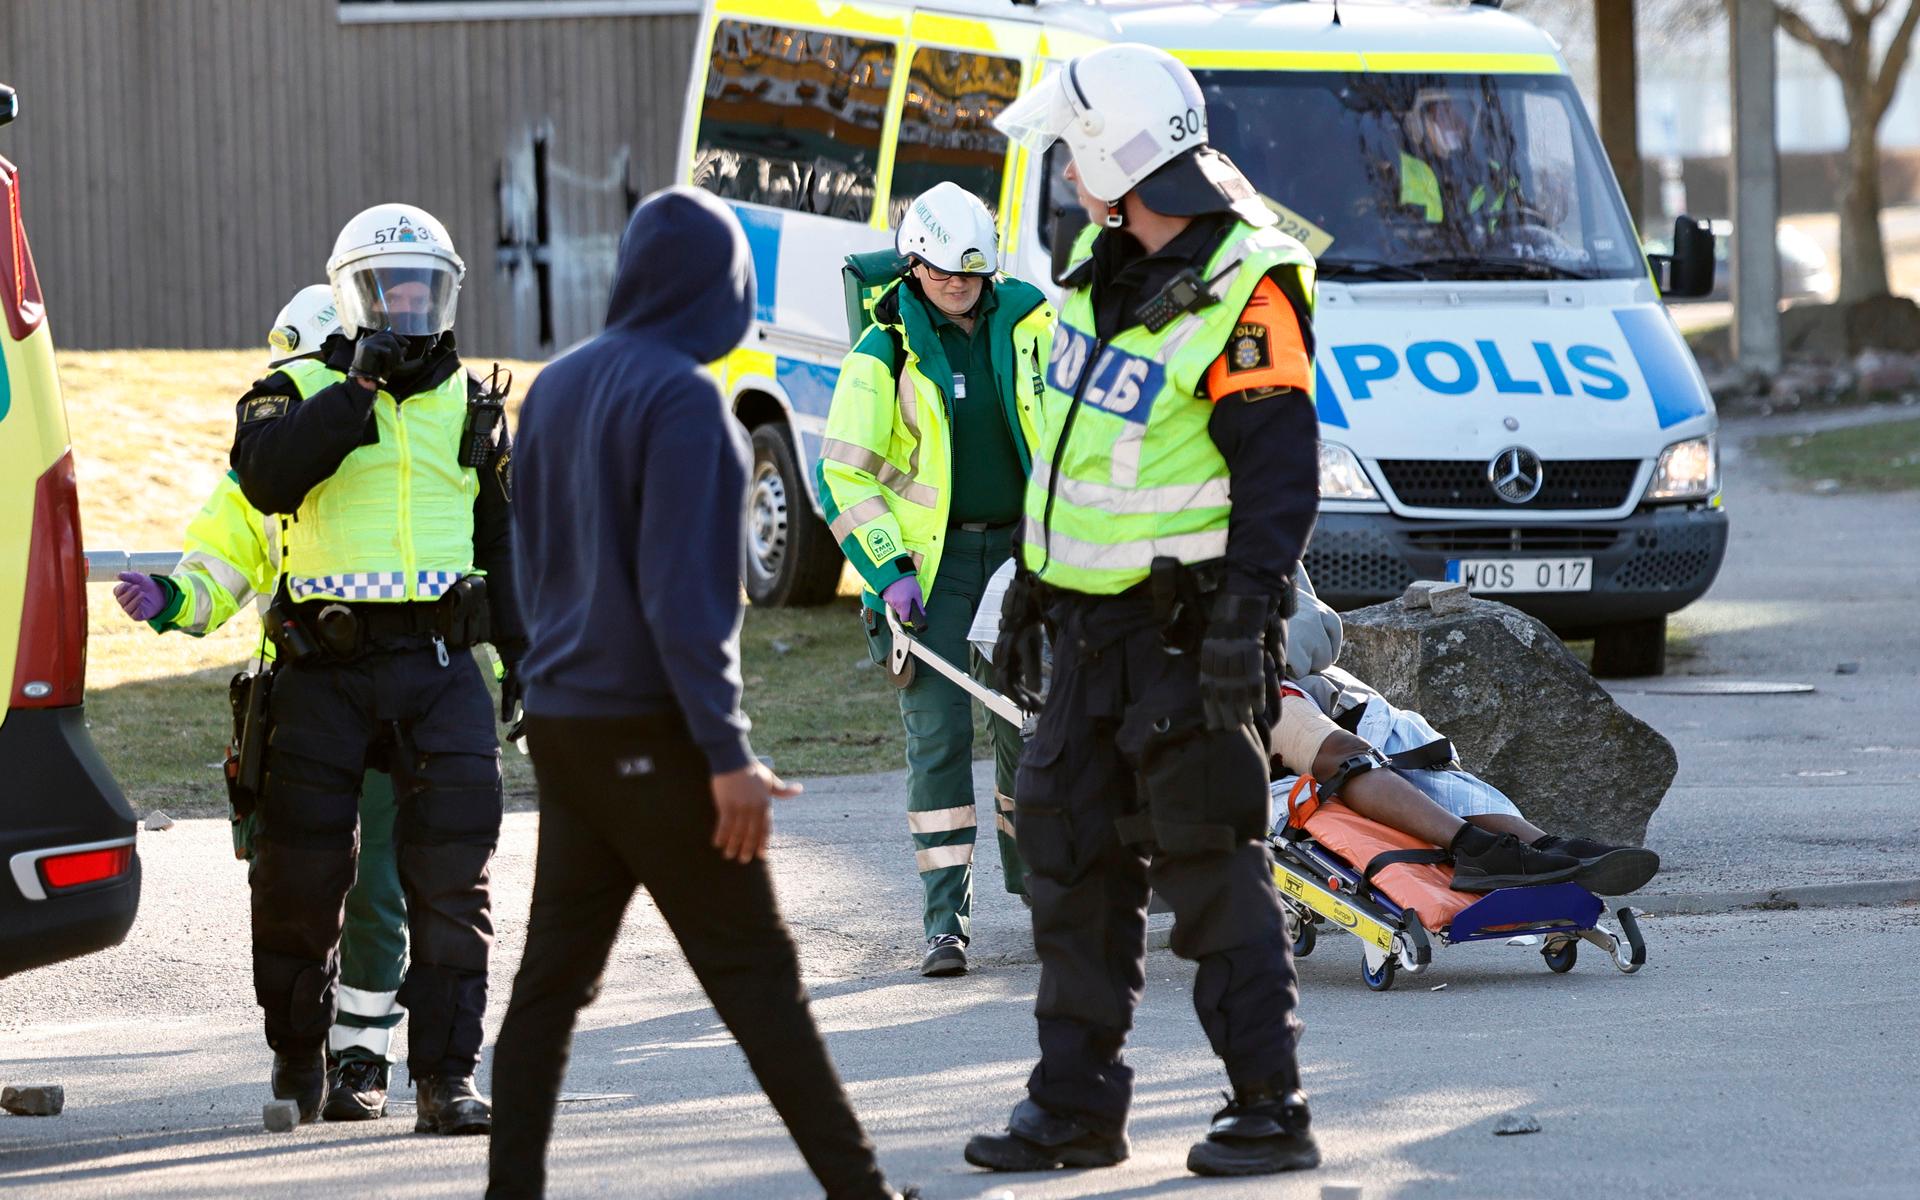 Polis och ambulanspersonal lägger en skadad man som skjutits i benet på en bår under upploppen i Navestad i Norrköping på påskdagen.Oroligheterna utlöstes av att den högerextrema provokatören Rasmus Paludan har sagt att han ska återvända till Östergötland för nya demonstrationer under dagen.